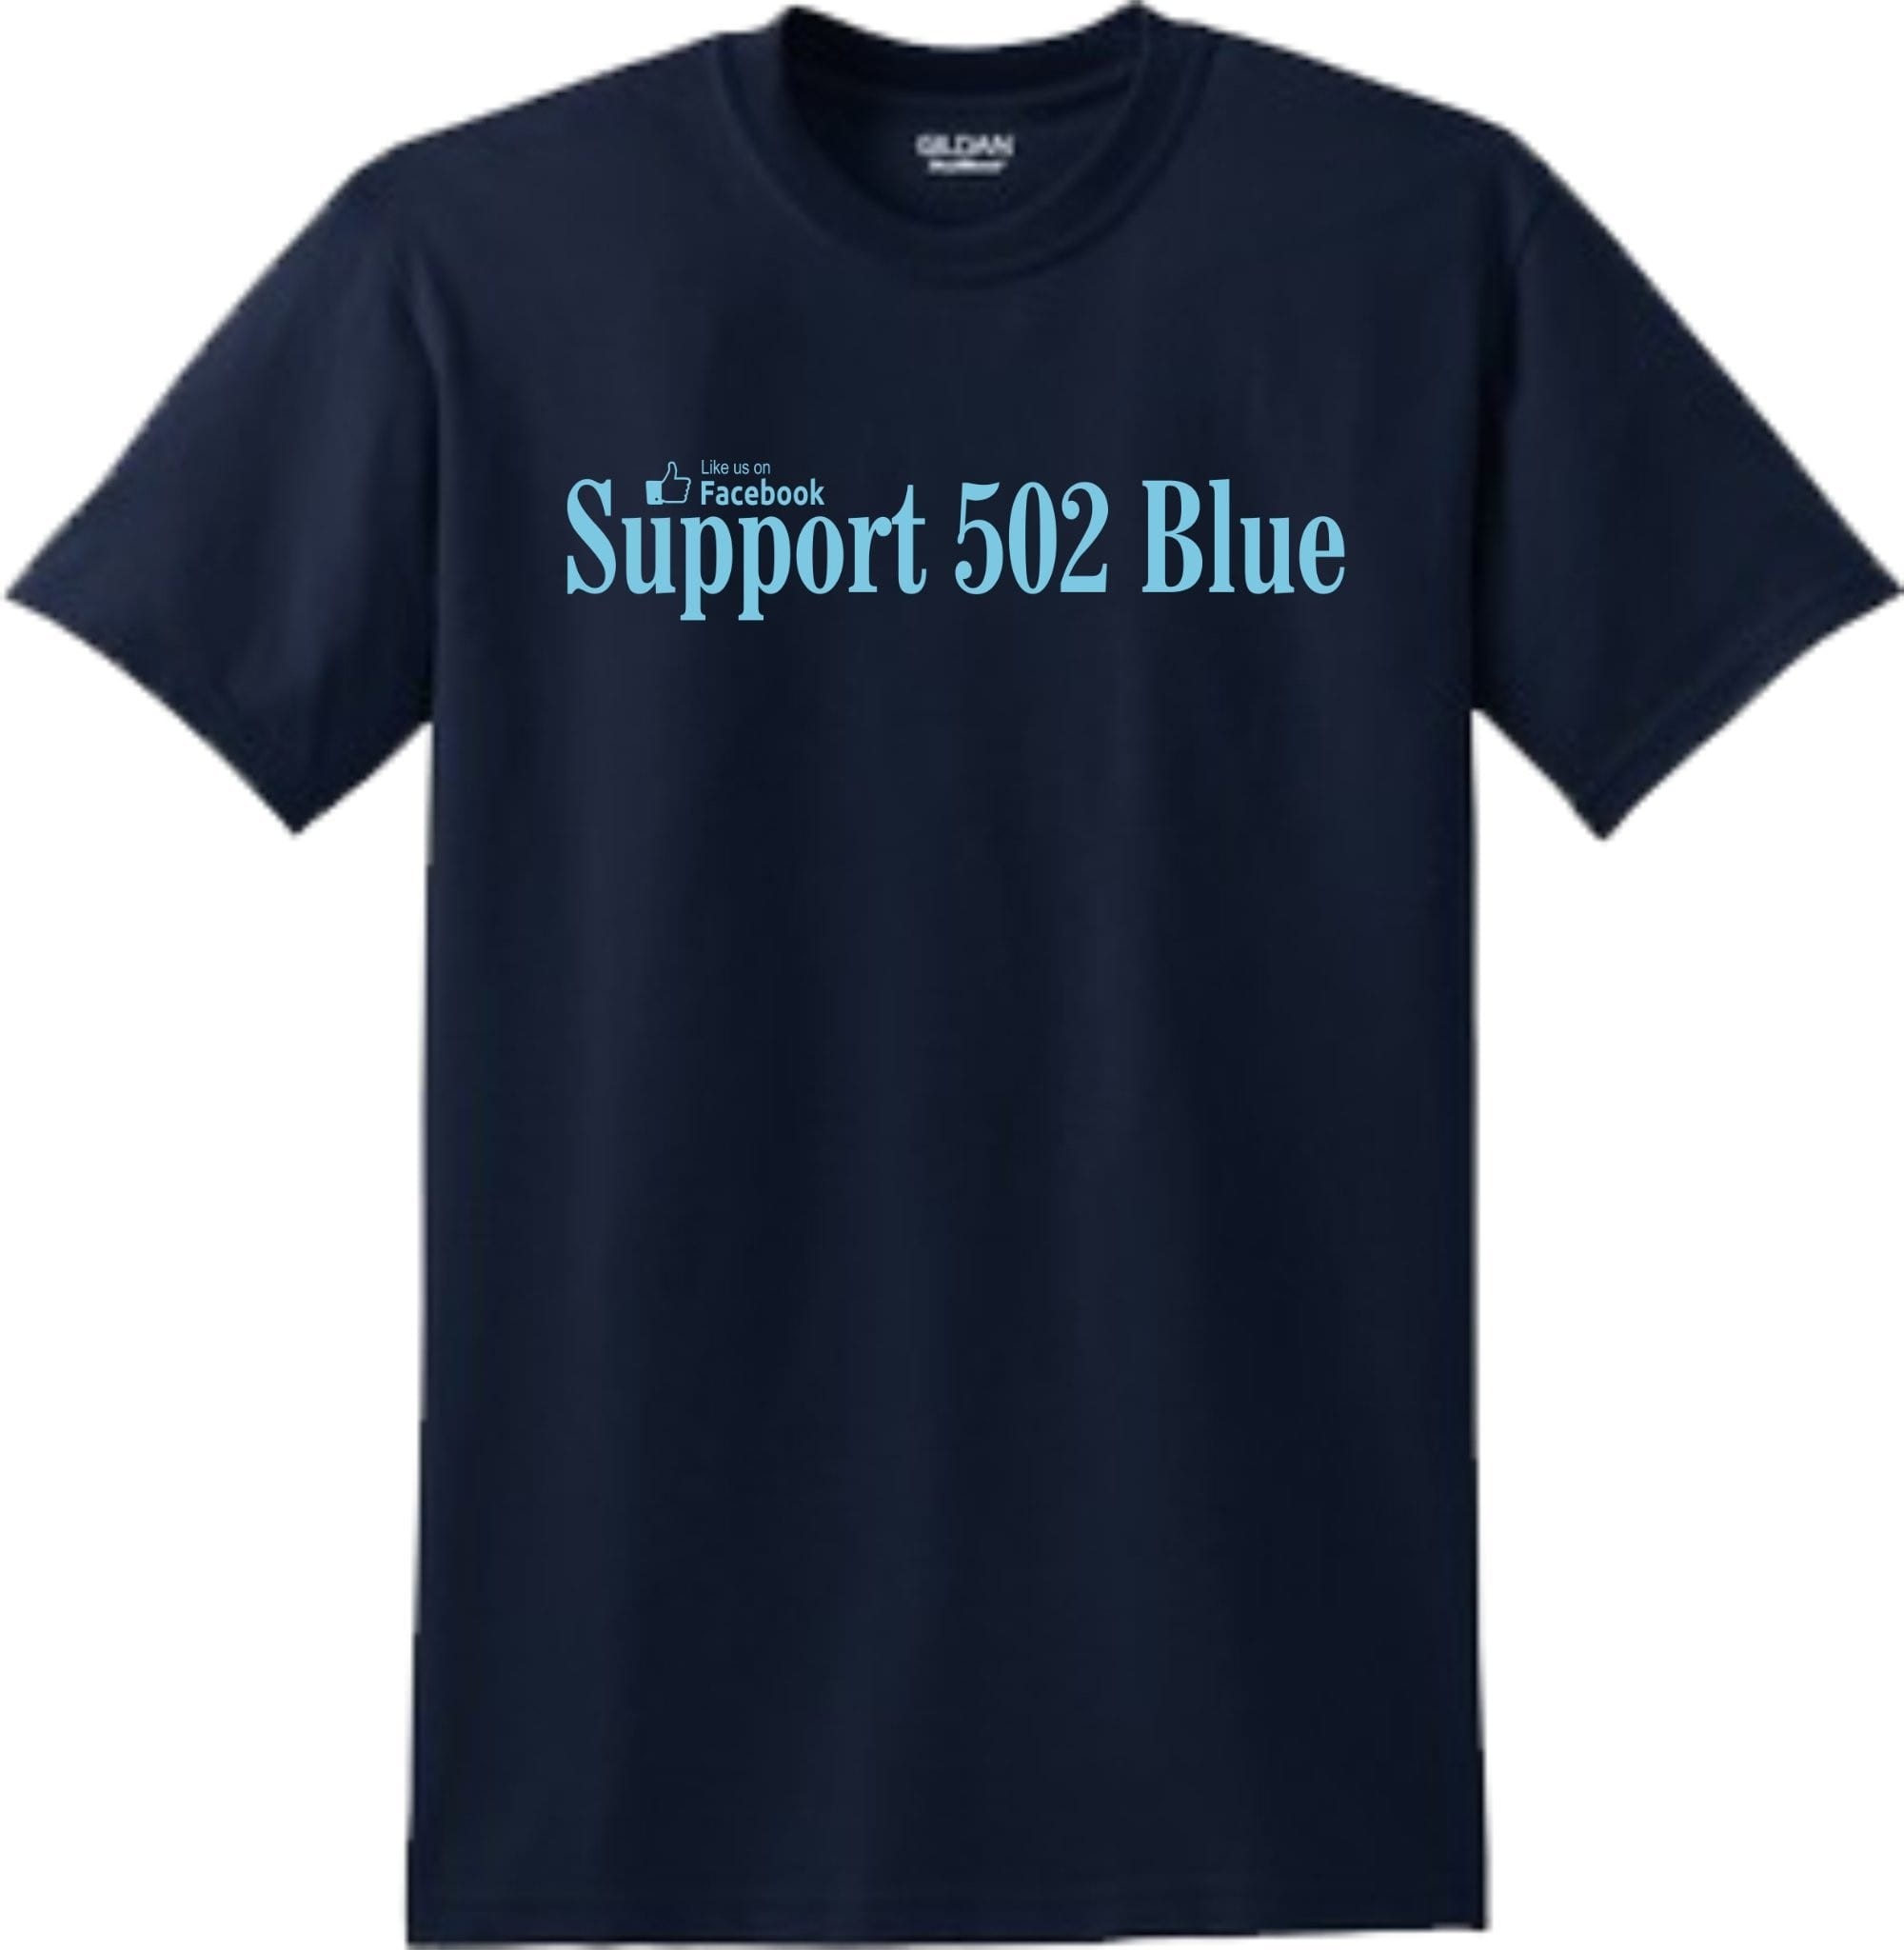 Support 502 Blue T-Shirt